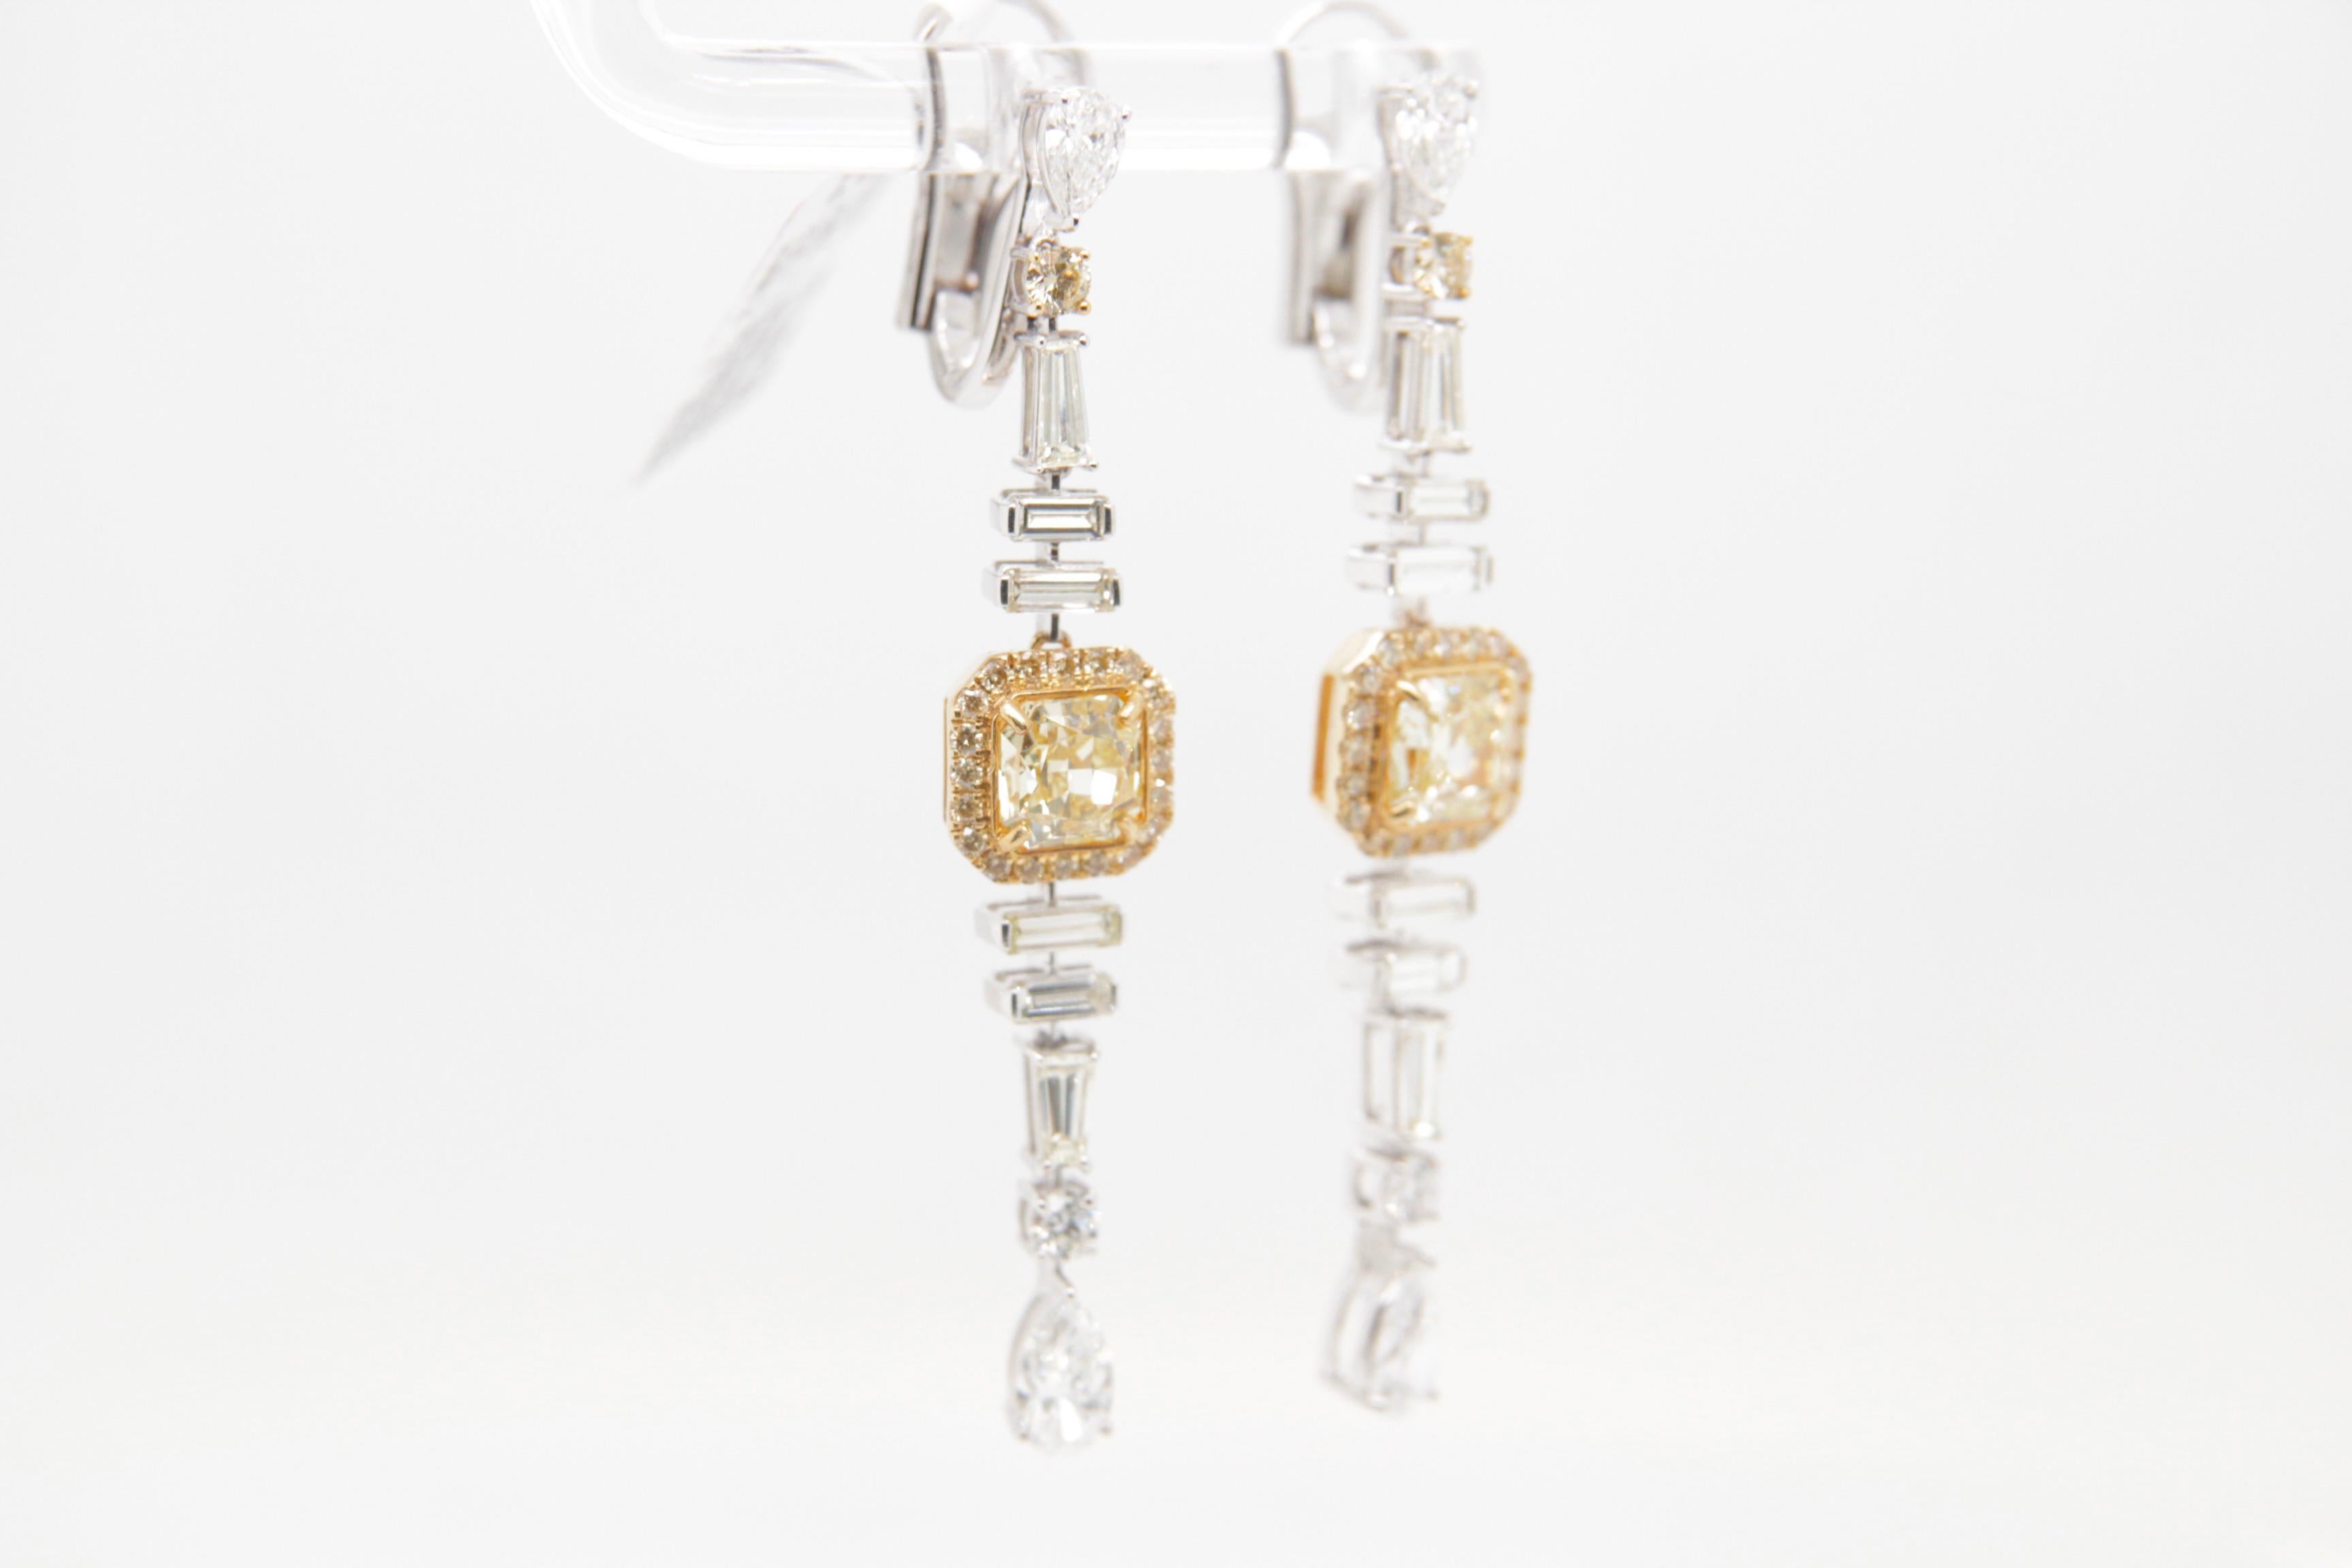 Radiant Cut GIA Certified 2.30 Carat Fancy Yellow Diamond Dangle Earrings in 18 Karat Gold For Sale